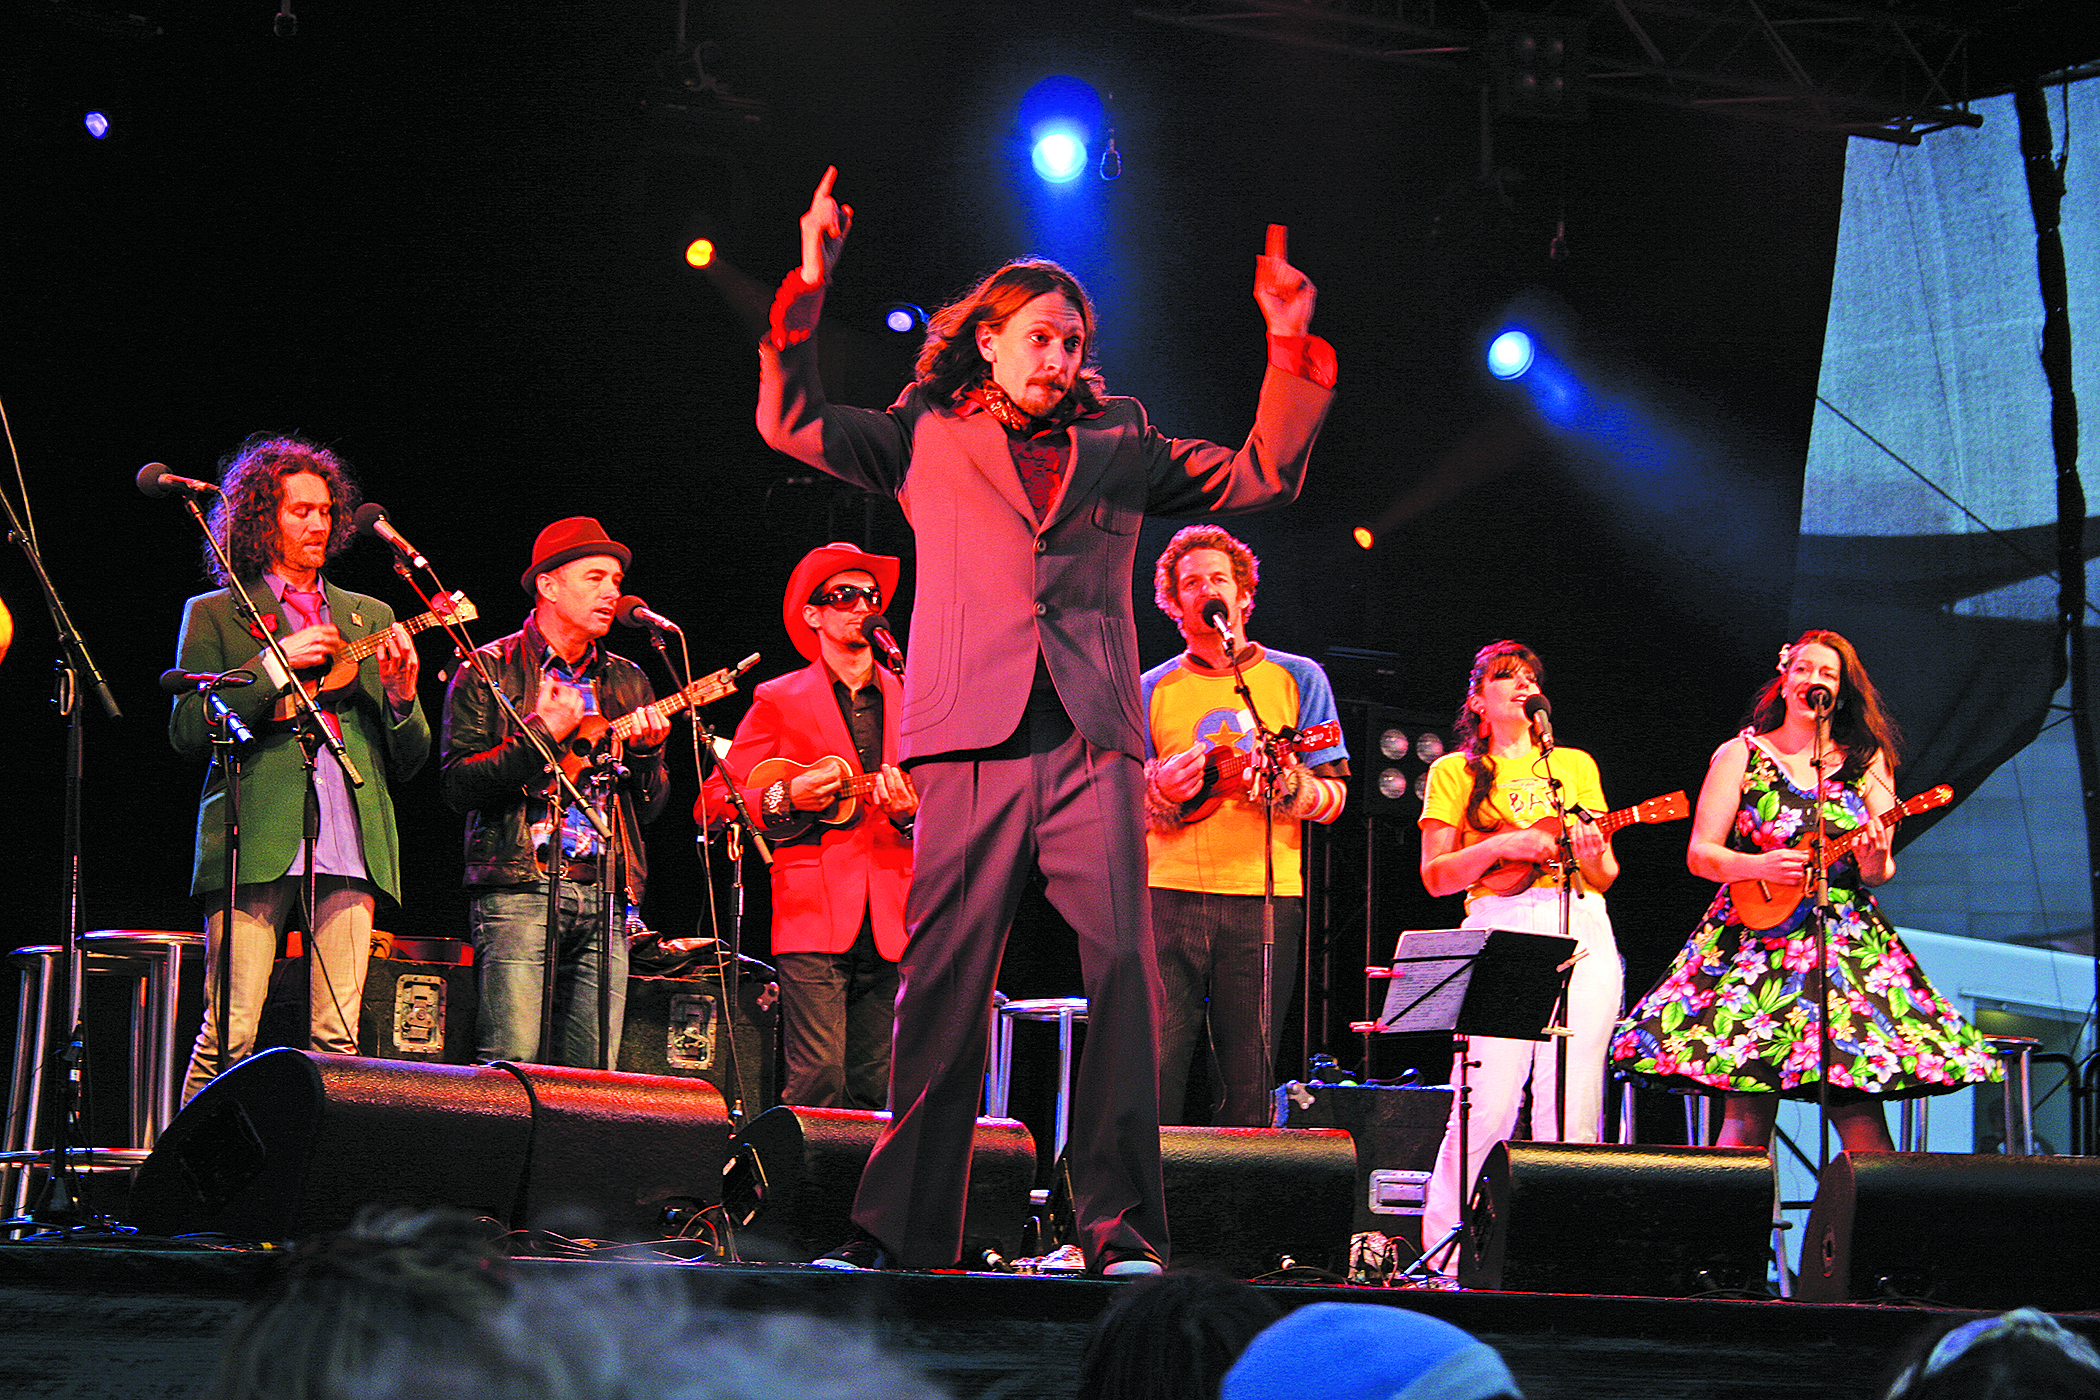 Zealand ukulele orchestra combines humor and pop music - UGA